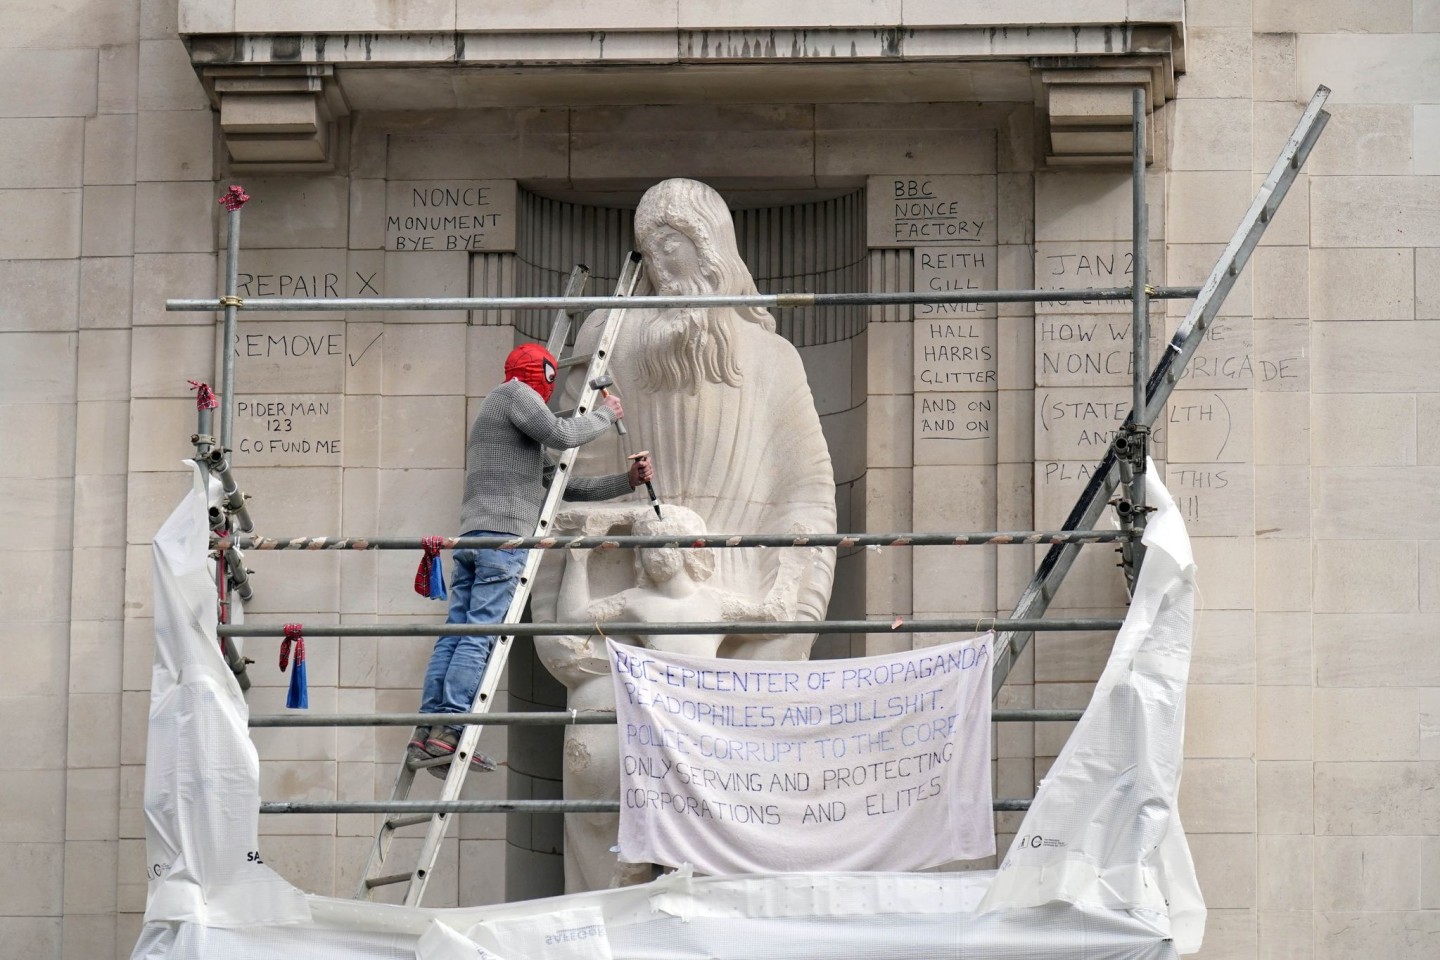 Ein Mann mit einer Spiderman-Maske beschädigt die Statue eines umstrittenen Bildhauers am Hauptquartier der BBC in London.